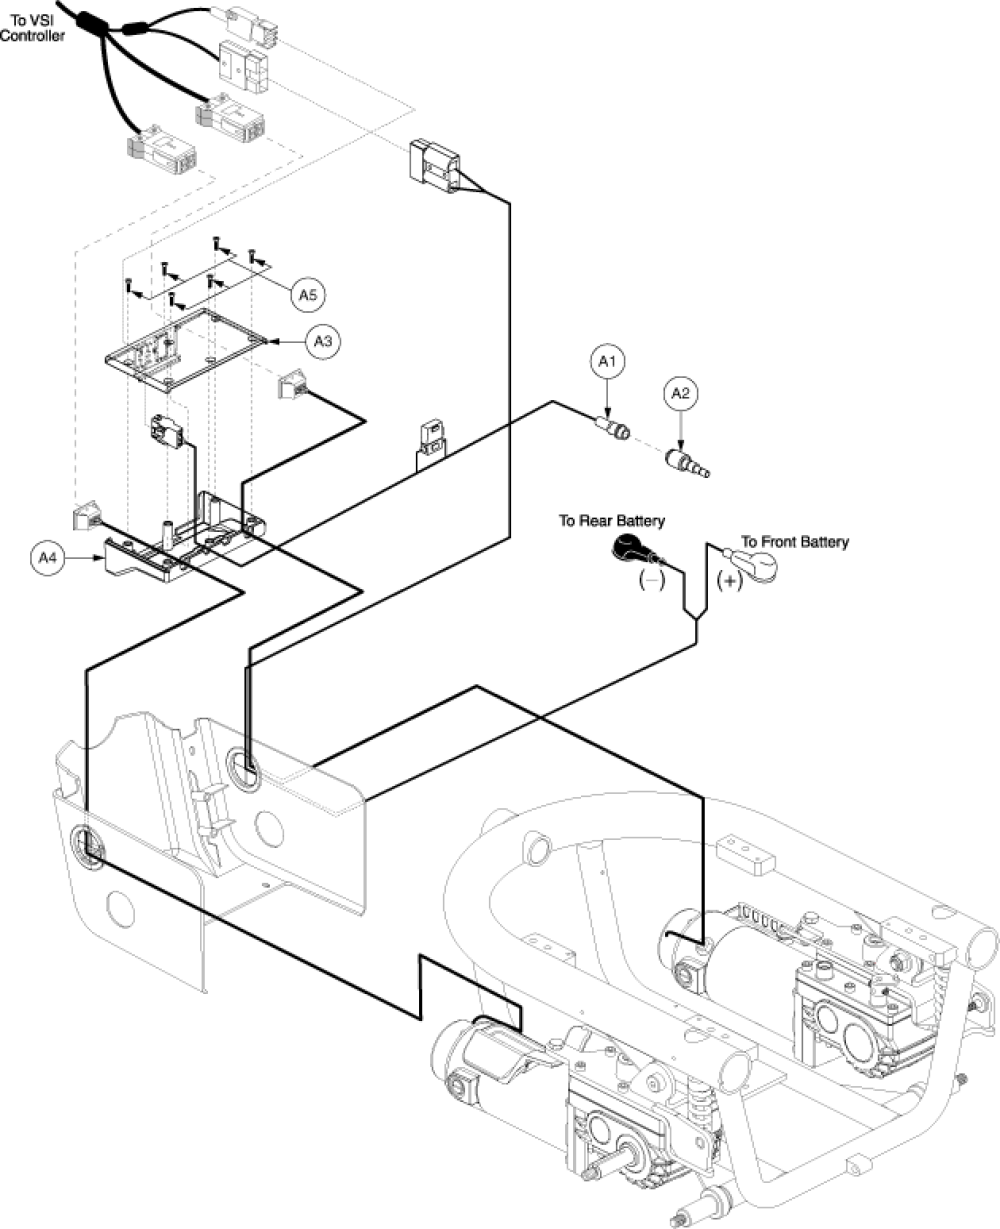 Electronics Assembly - Vsi, Qr, Off-board parts diagram